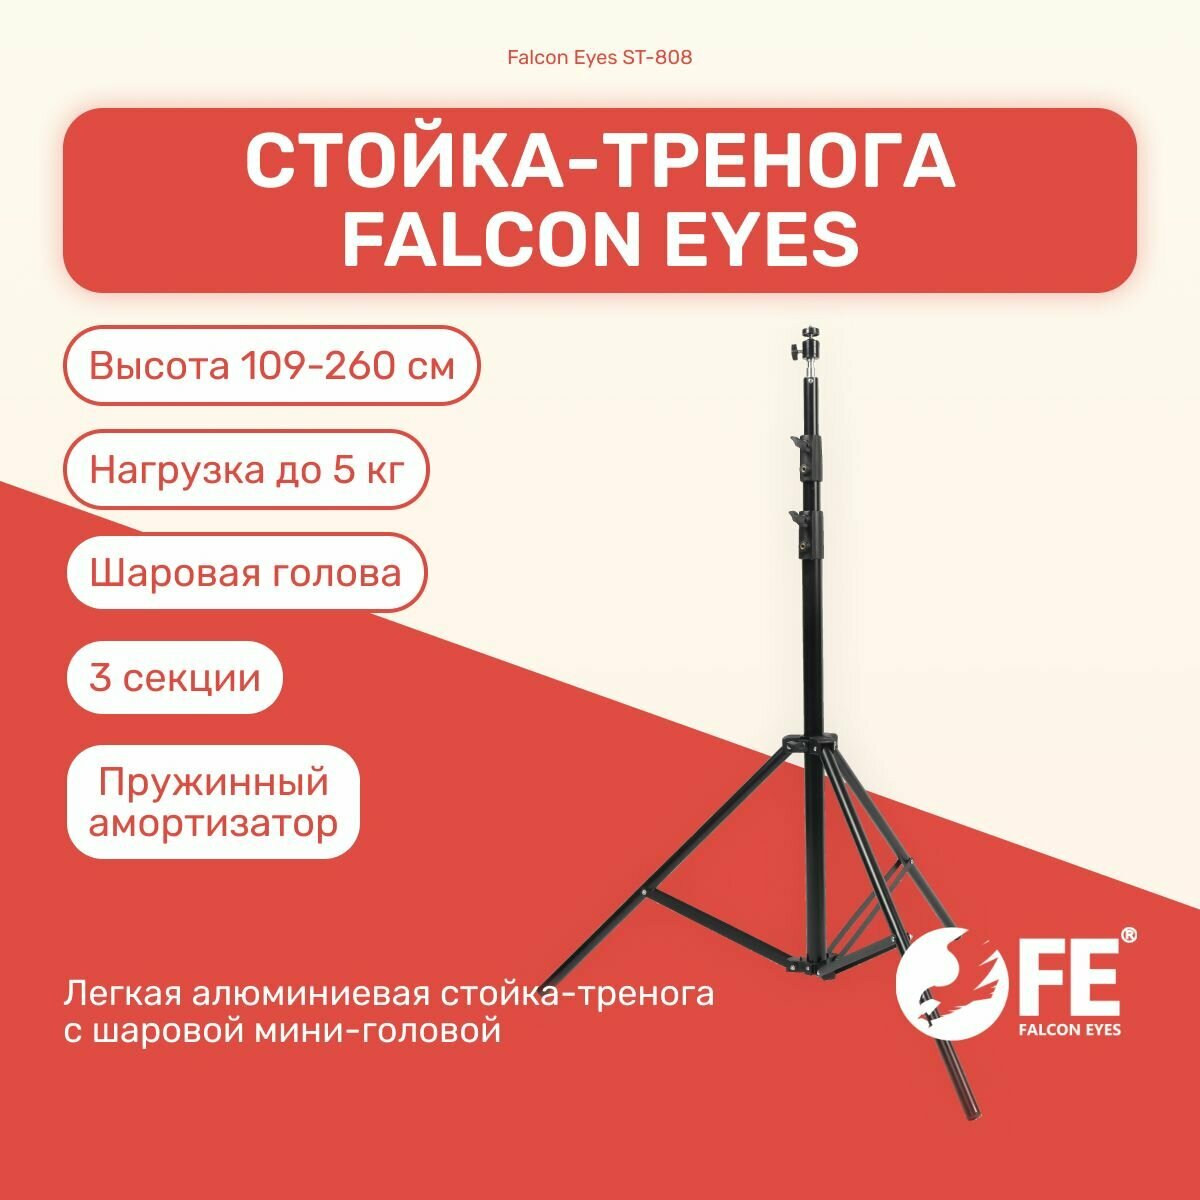 Стойка-тренога Falcon Eyes ST-808 260 см для фото/видеостудии, универсвльная, для светового оборудования, фотозоны, штатив